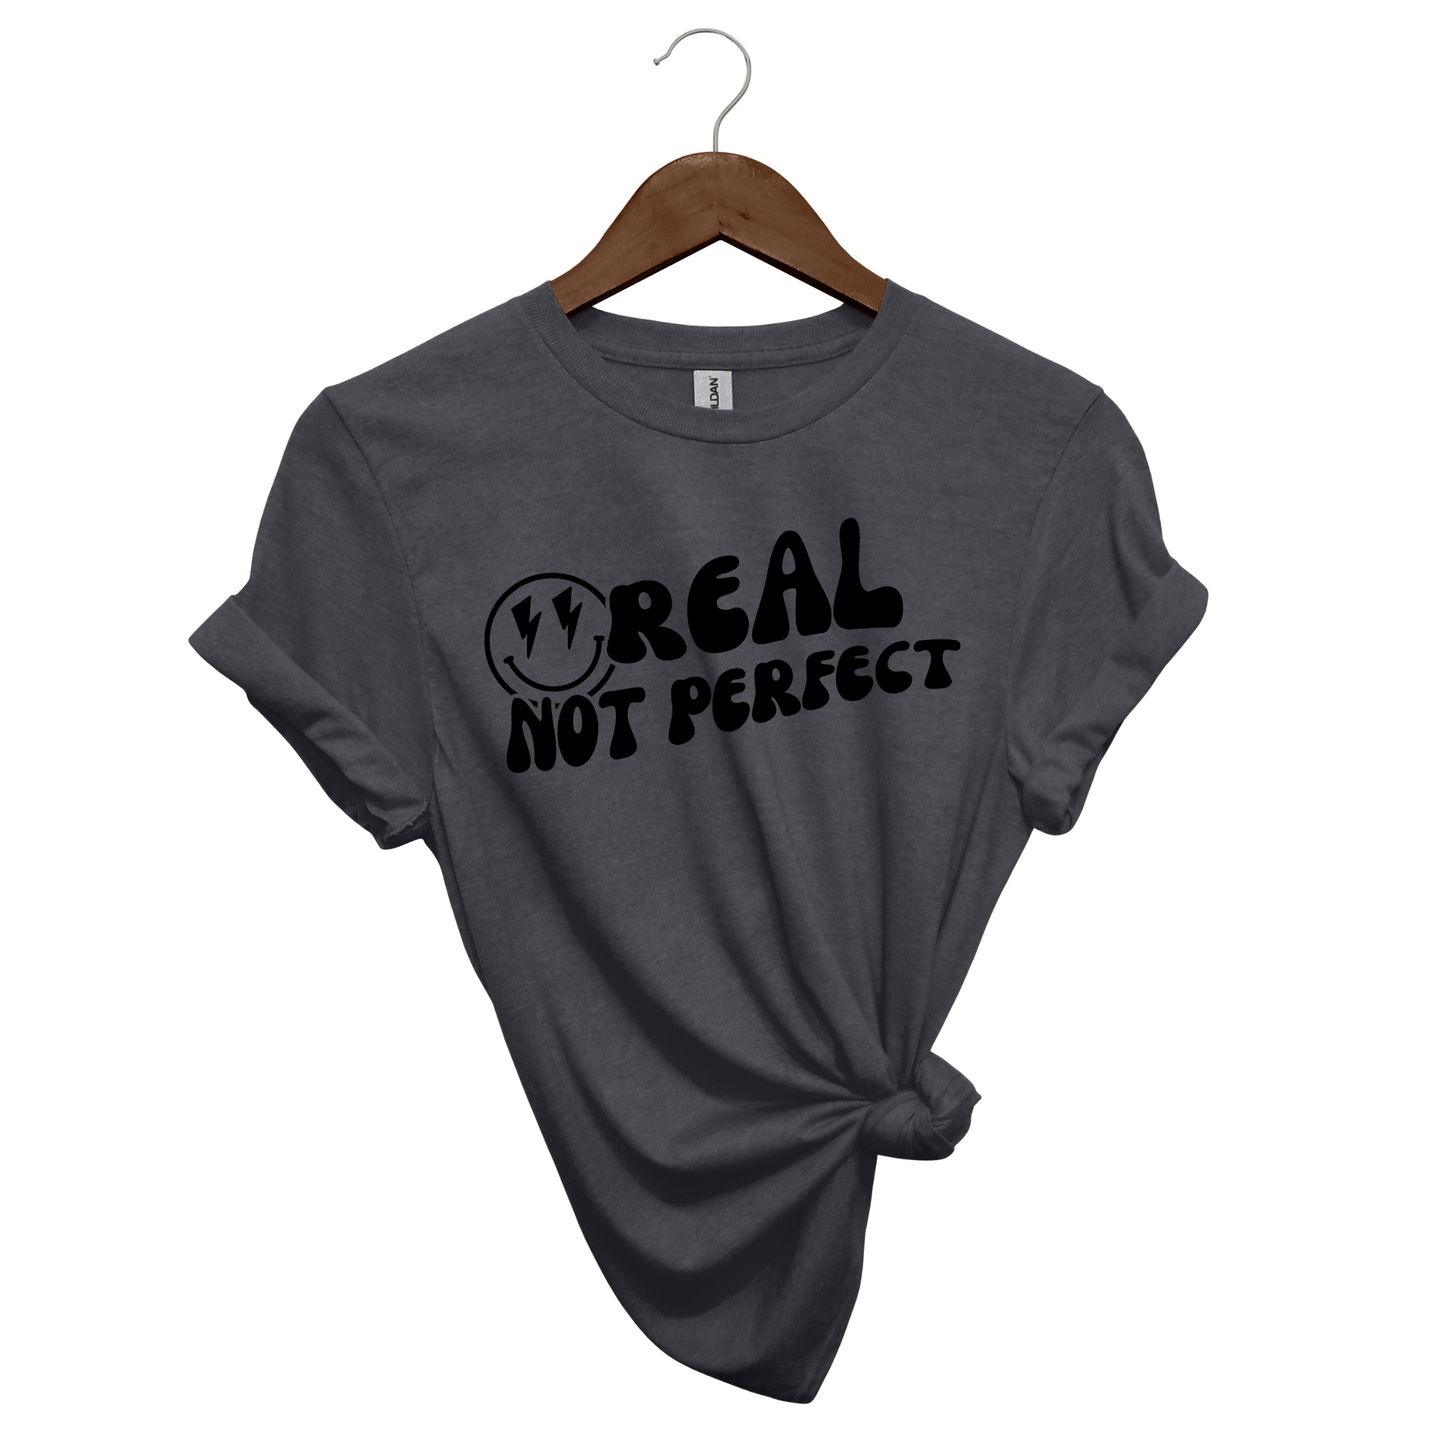 Real, Not Perfect Crewneck T Shirt dark heather grey